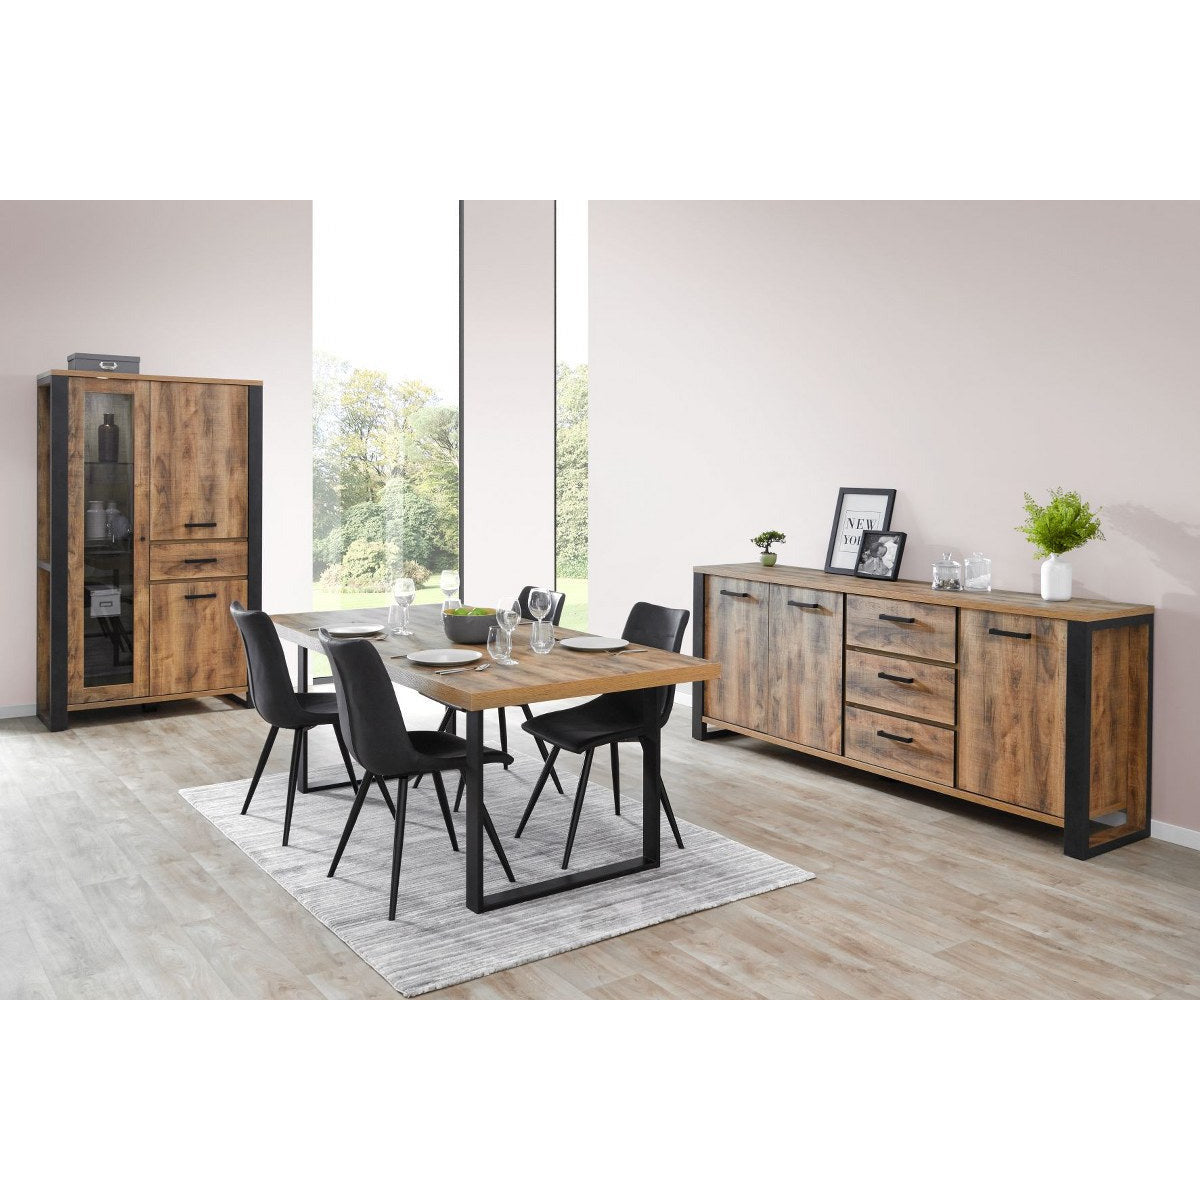 TV cabinet | Furniture series Tremolo | brown, black | 157x48x